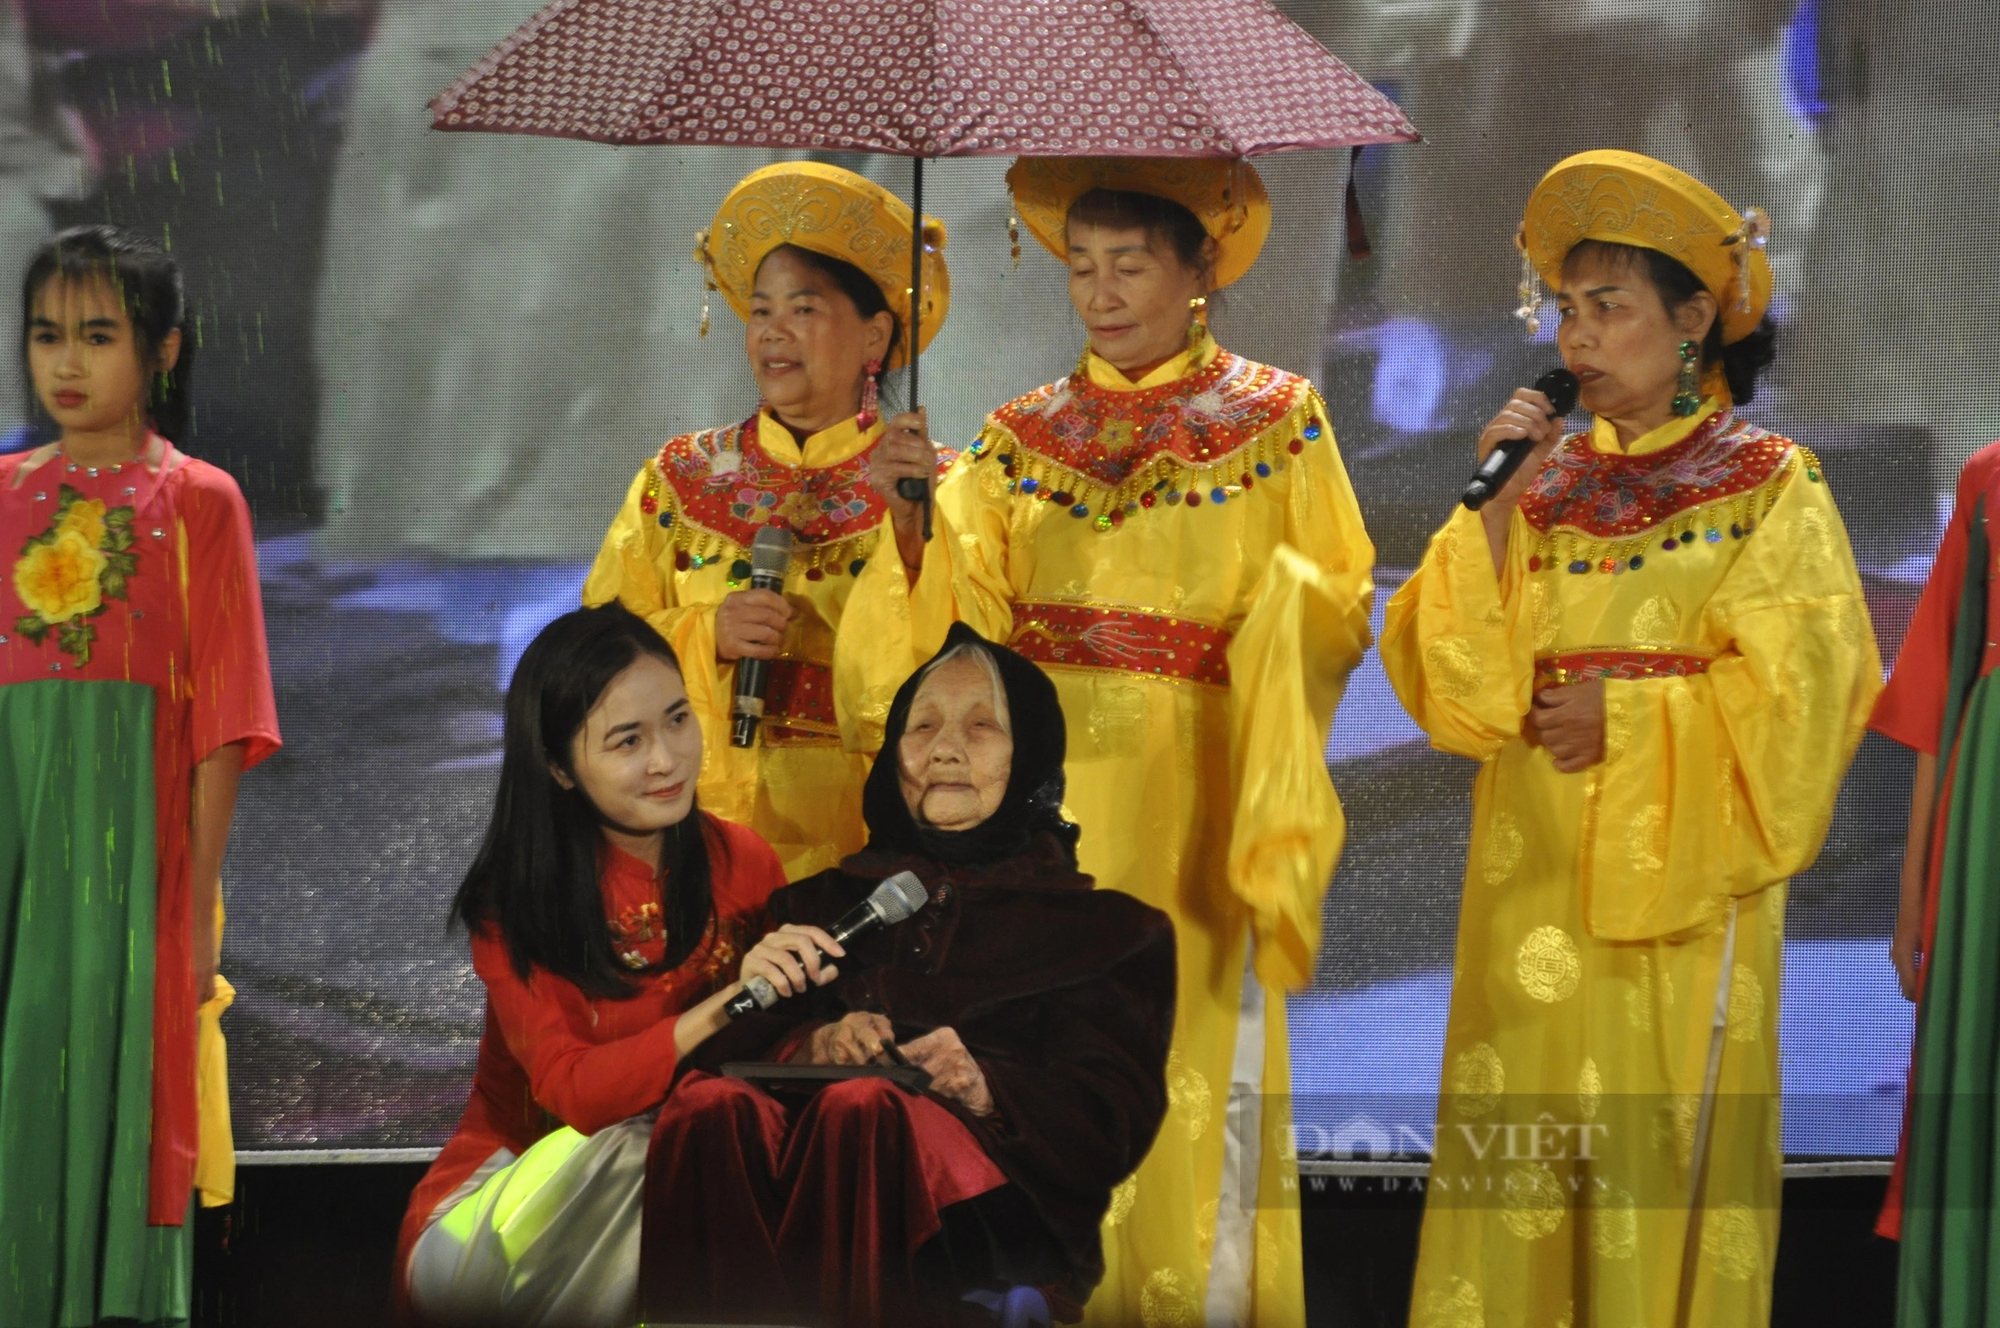 Nét độc đáo của lễ hội ở Quảng Ninh vừa được công nhận Di sản văn hóa phi vật thể cấp quốc gia - Ảnh 3.